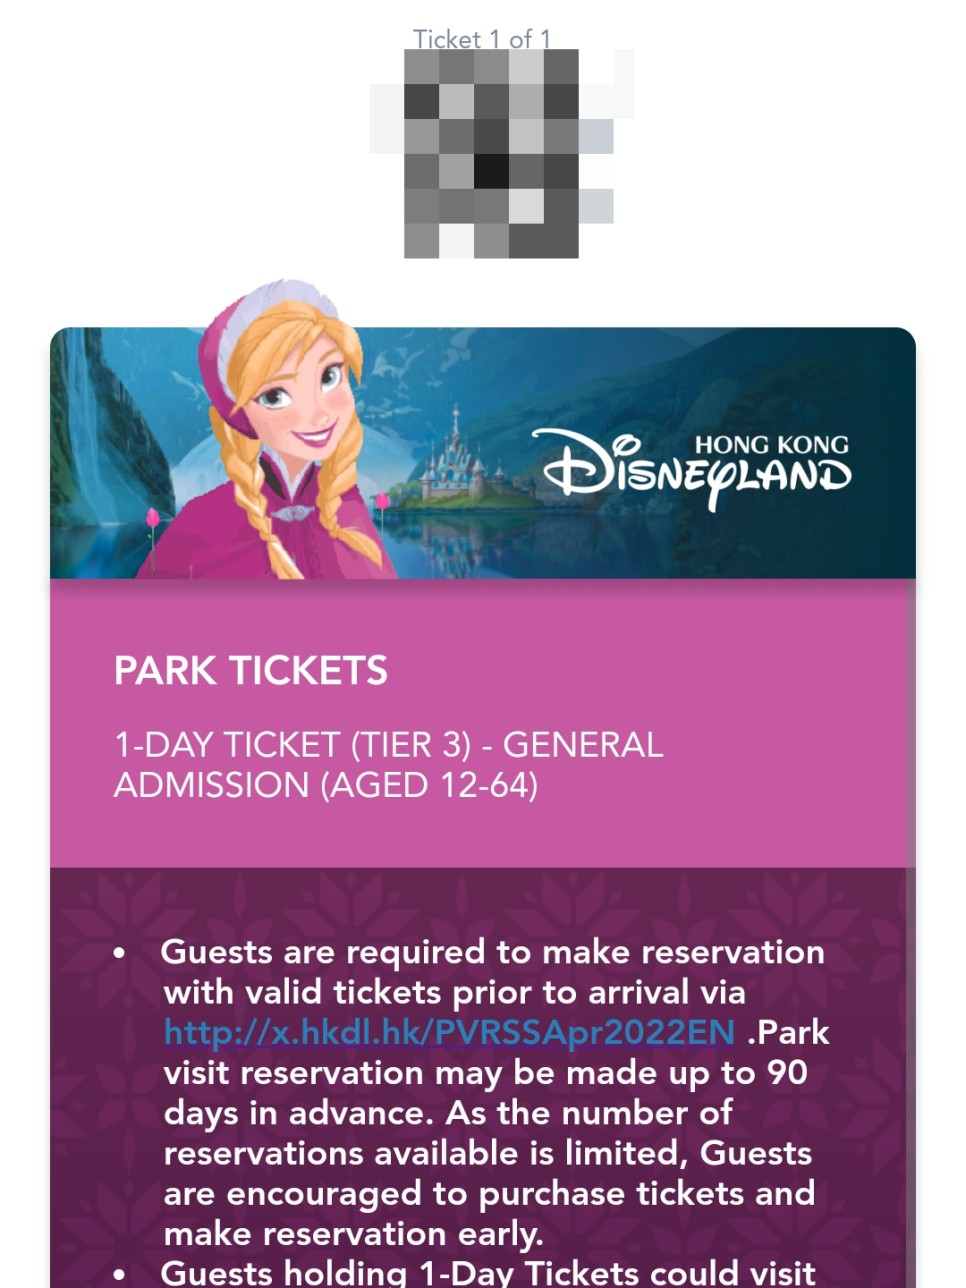 홍콩 디즈니랜드 겨울왕국 불꽃놀이 추천 & 가는법 티켓 예약!